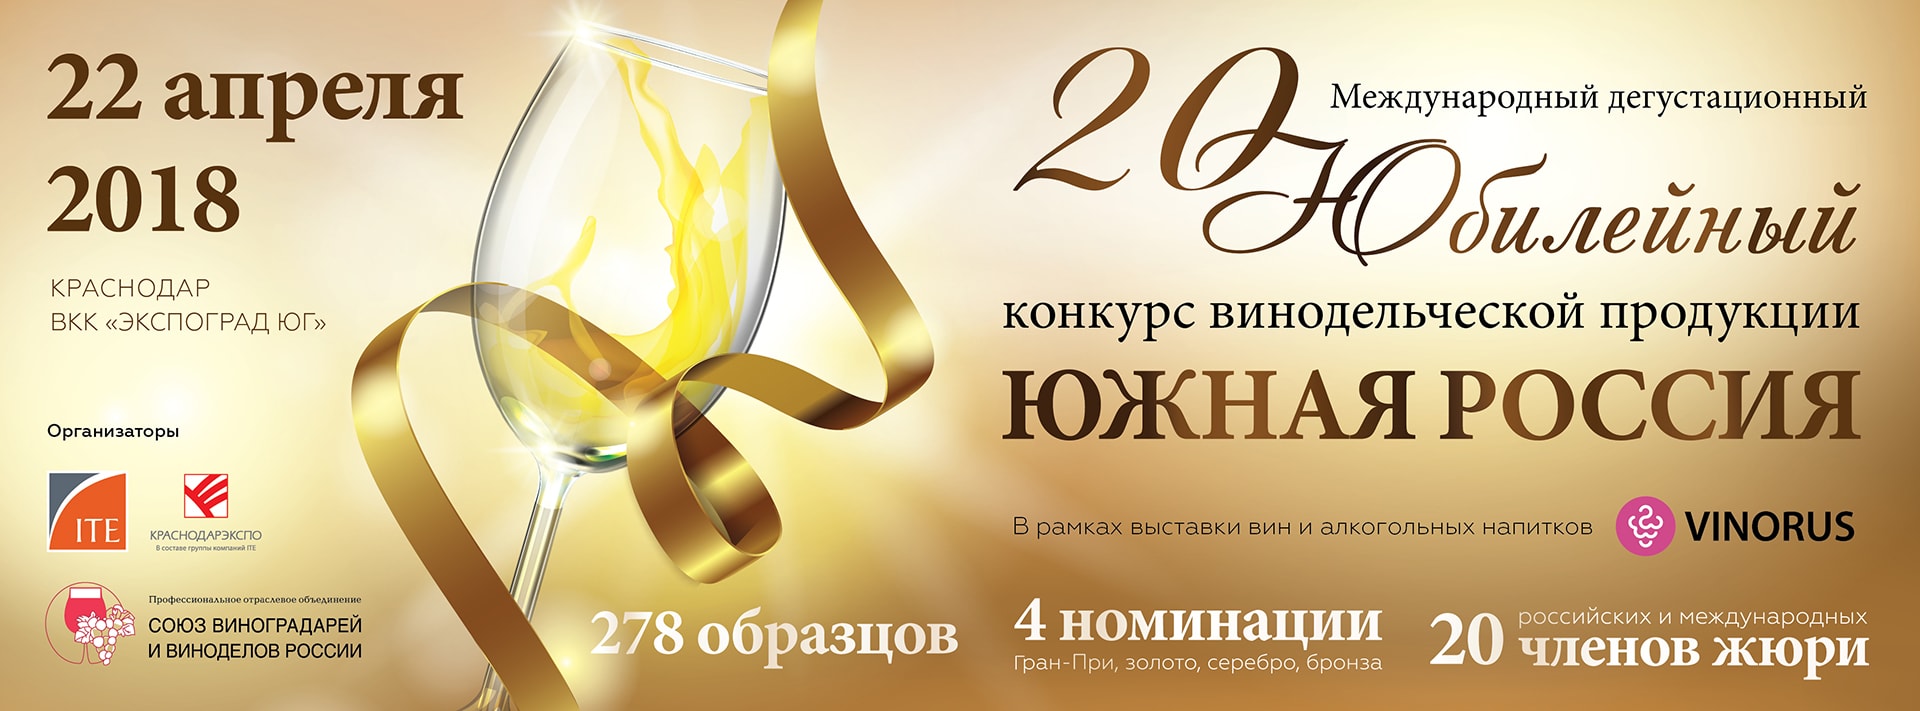 Кокур Нижегорский - известное в прошлом крымское вино